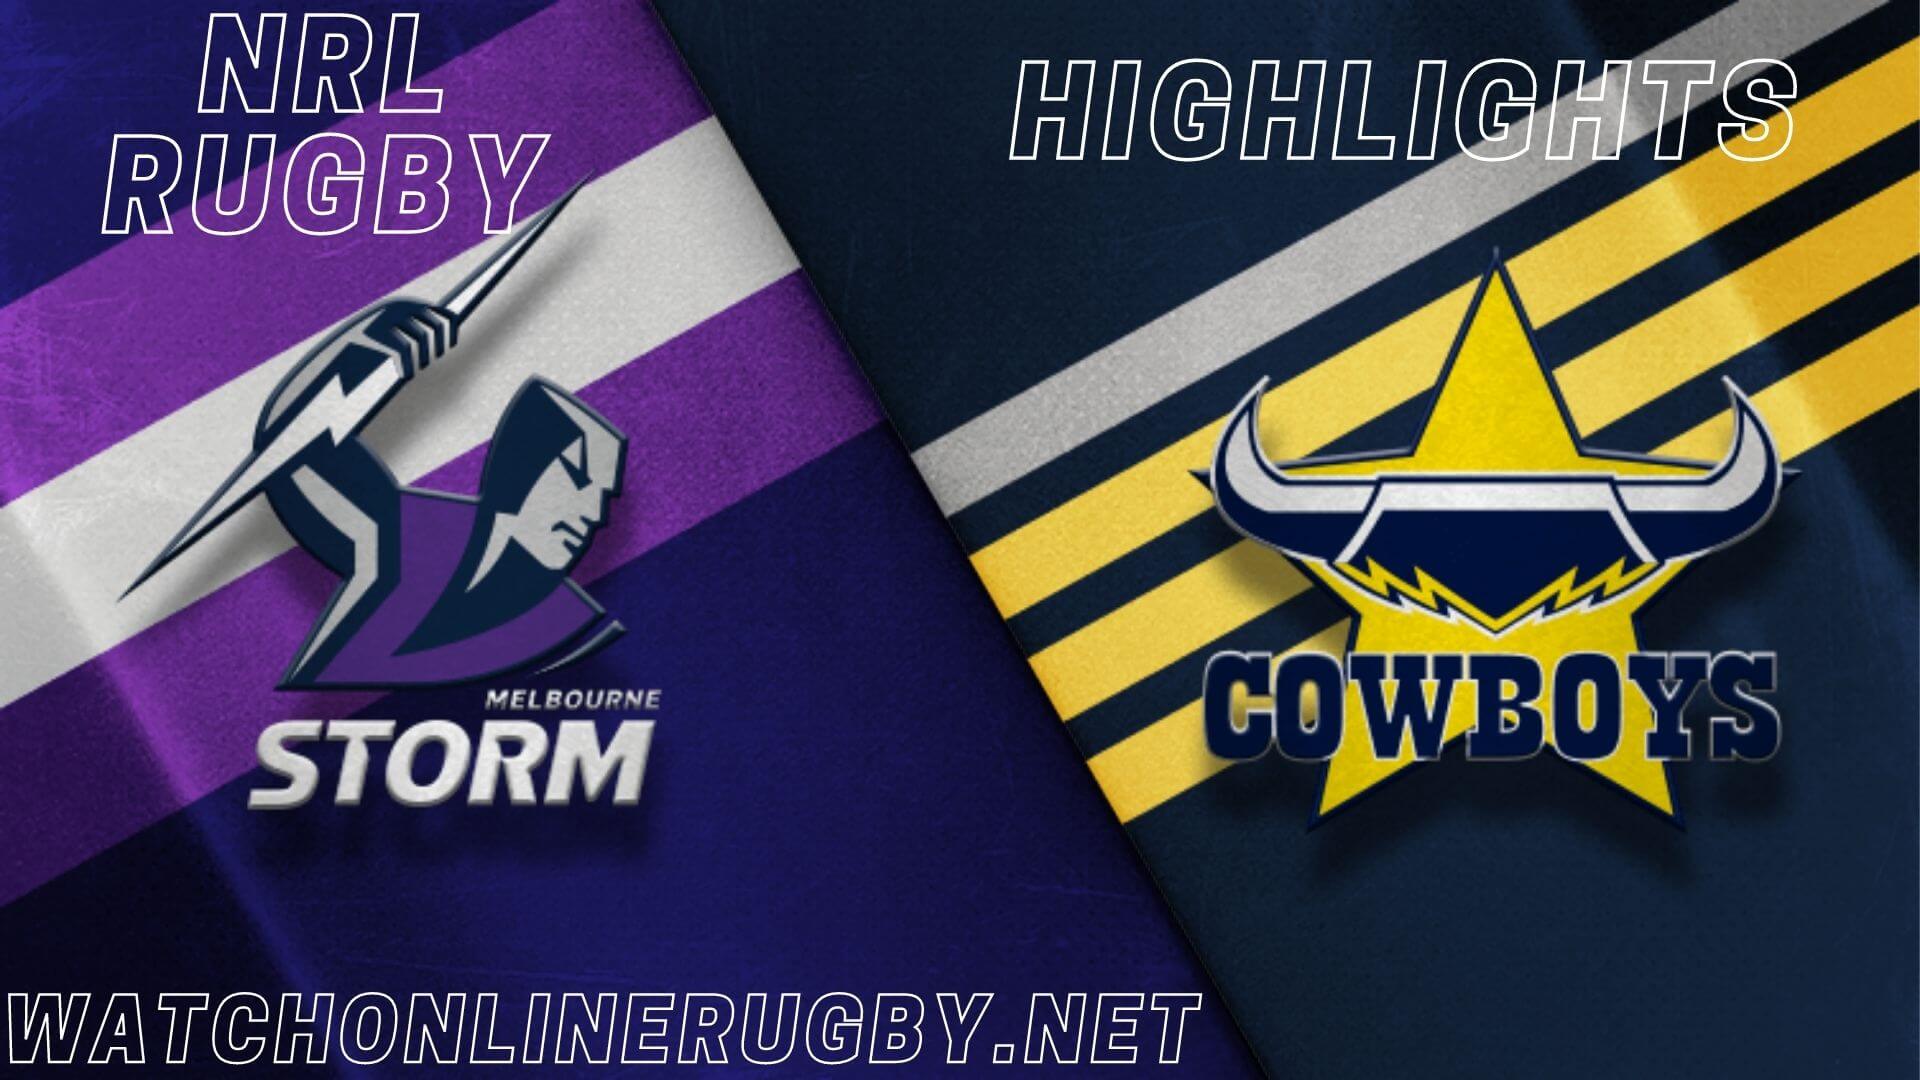 Cowboys Vs Storm Highlights RD 11 NRL Rugby